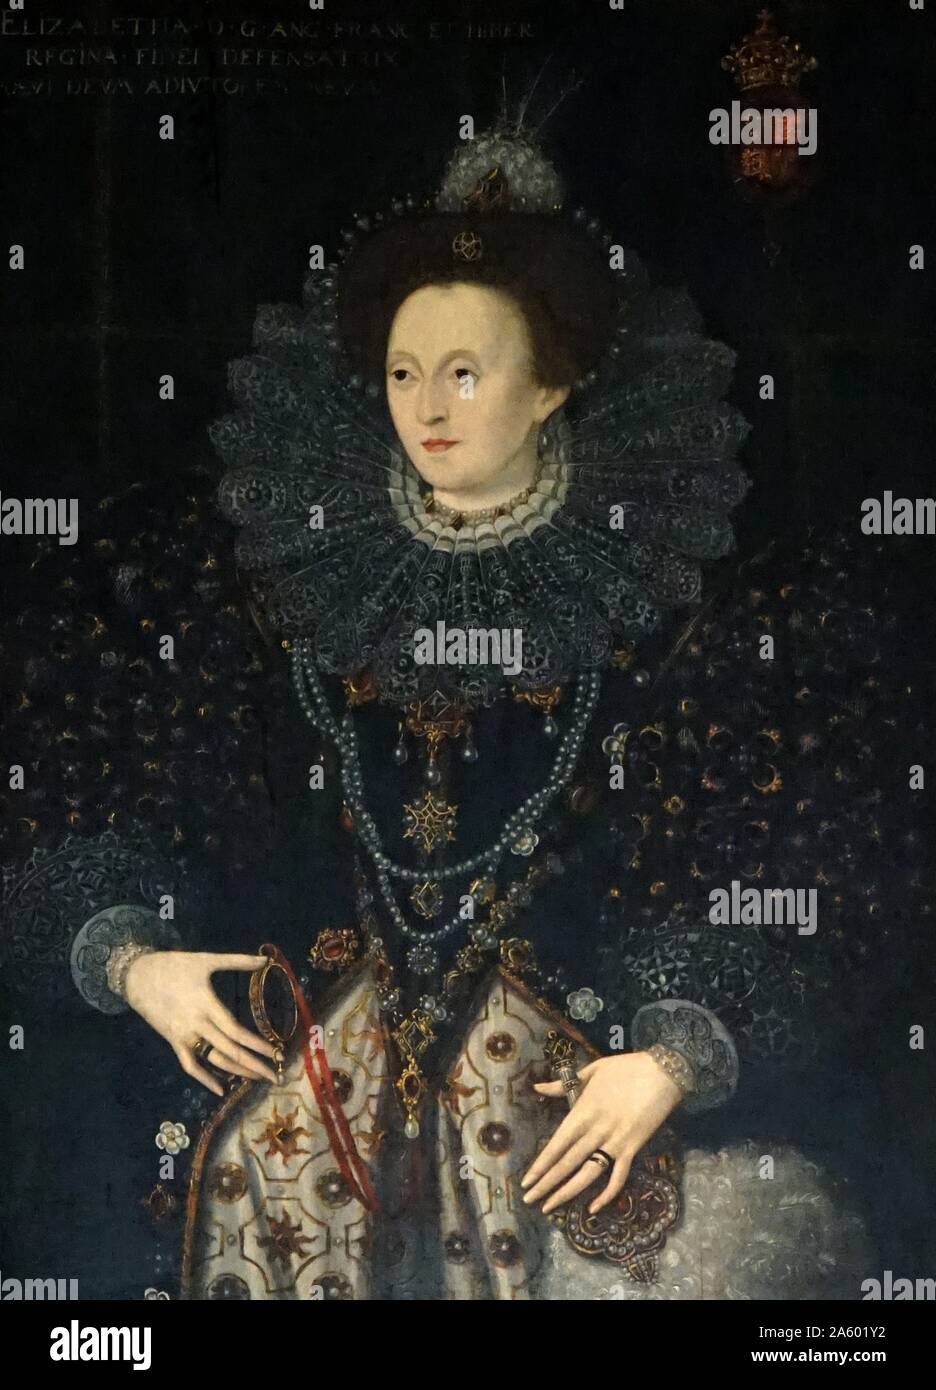 Porträt von Königin Elizabeth i. von England 1558-1603 regierte. 16. Jahrhundert, unbekannter Künstler. Charlecote Haus; Warwickshire, England Stockfoto